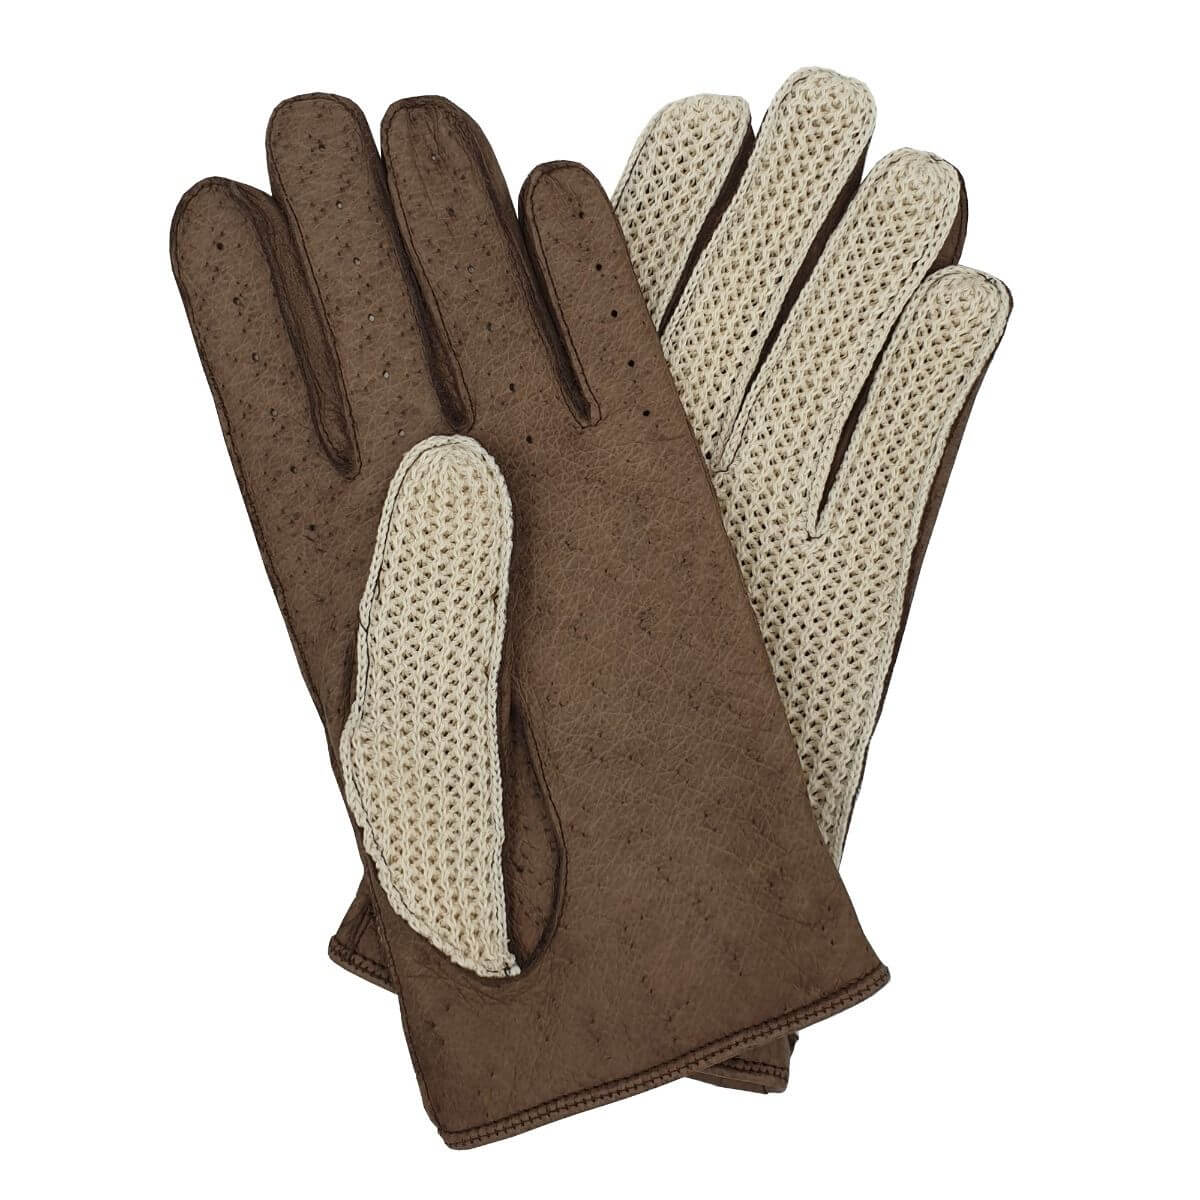 Southcombe Oborne - Crochet Back Pigskin Leather Palm Glove